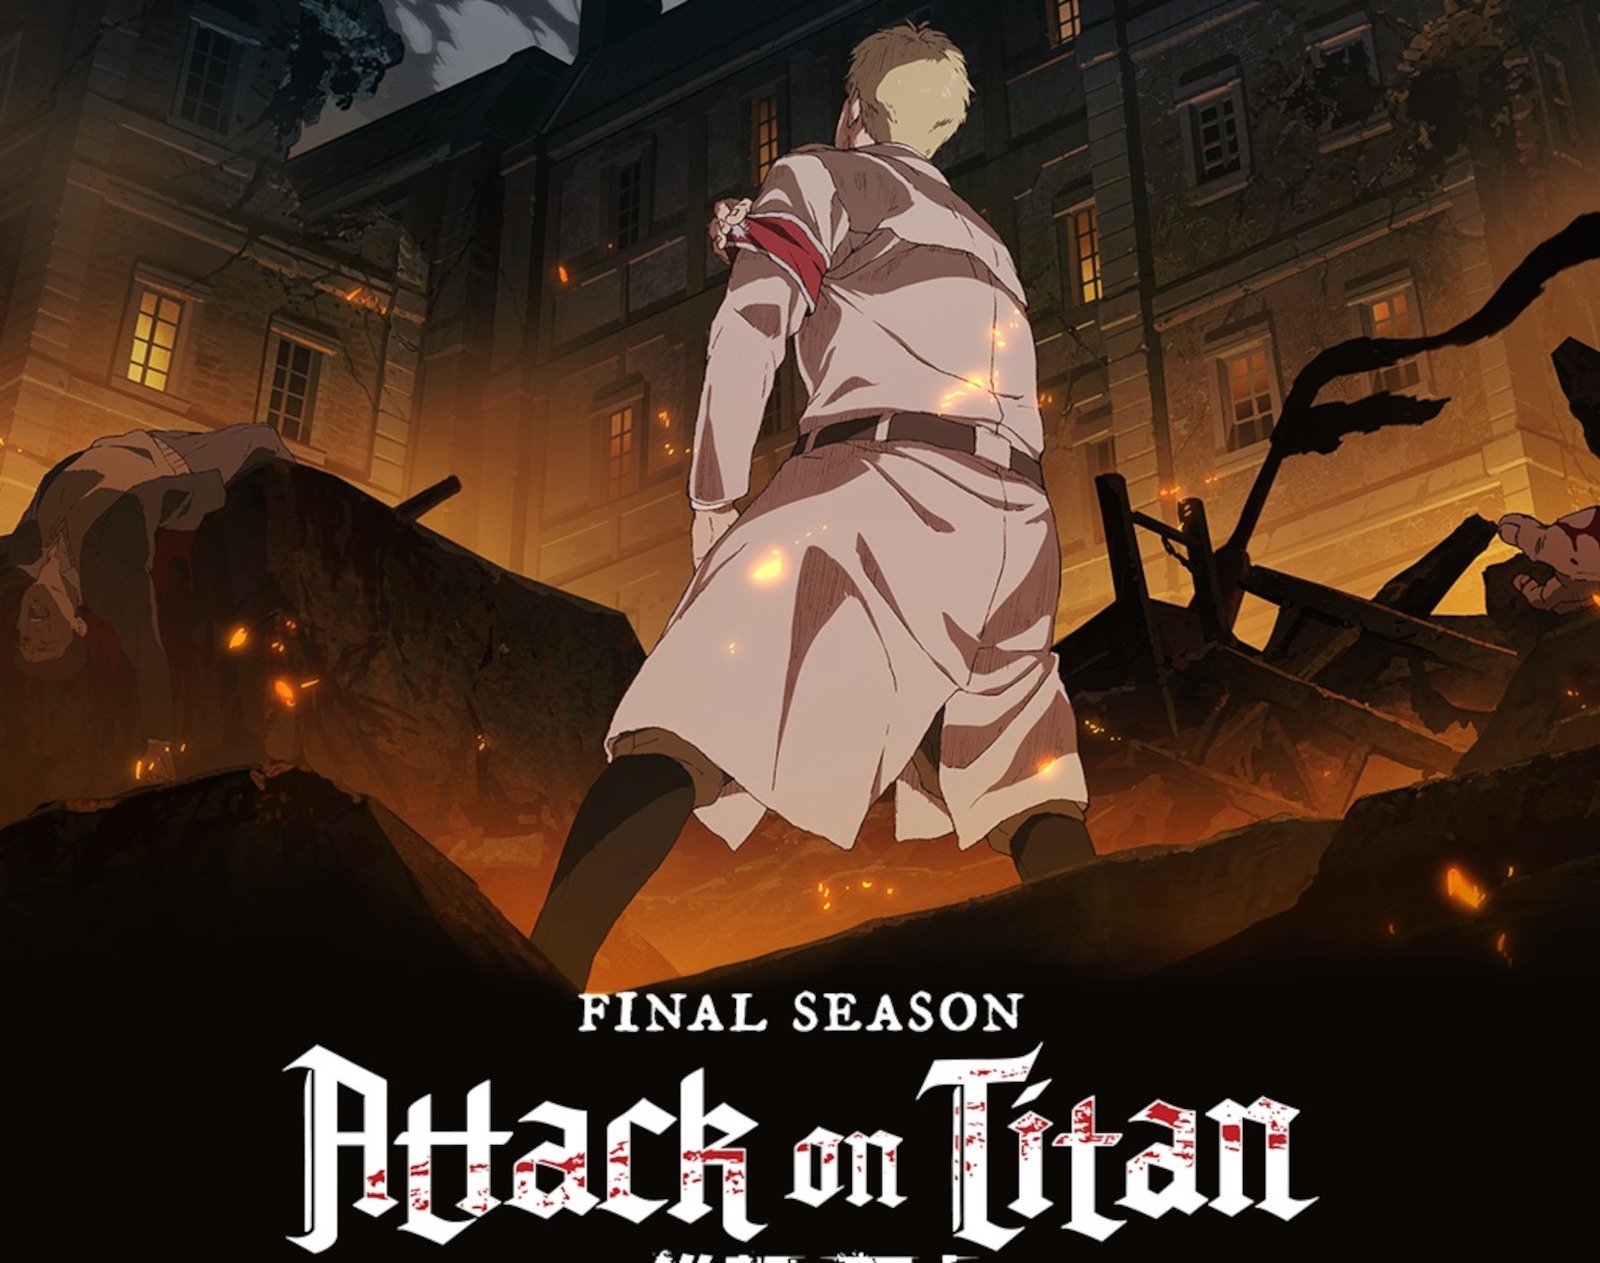 Attack on Titan Season 4 Returns With Eren and Reiner's Bloodiest Brawl Yet